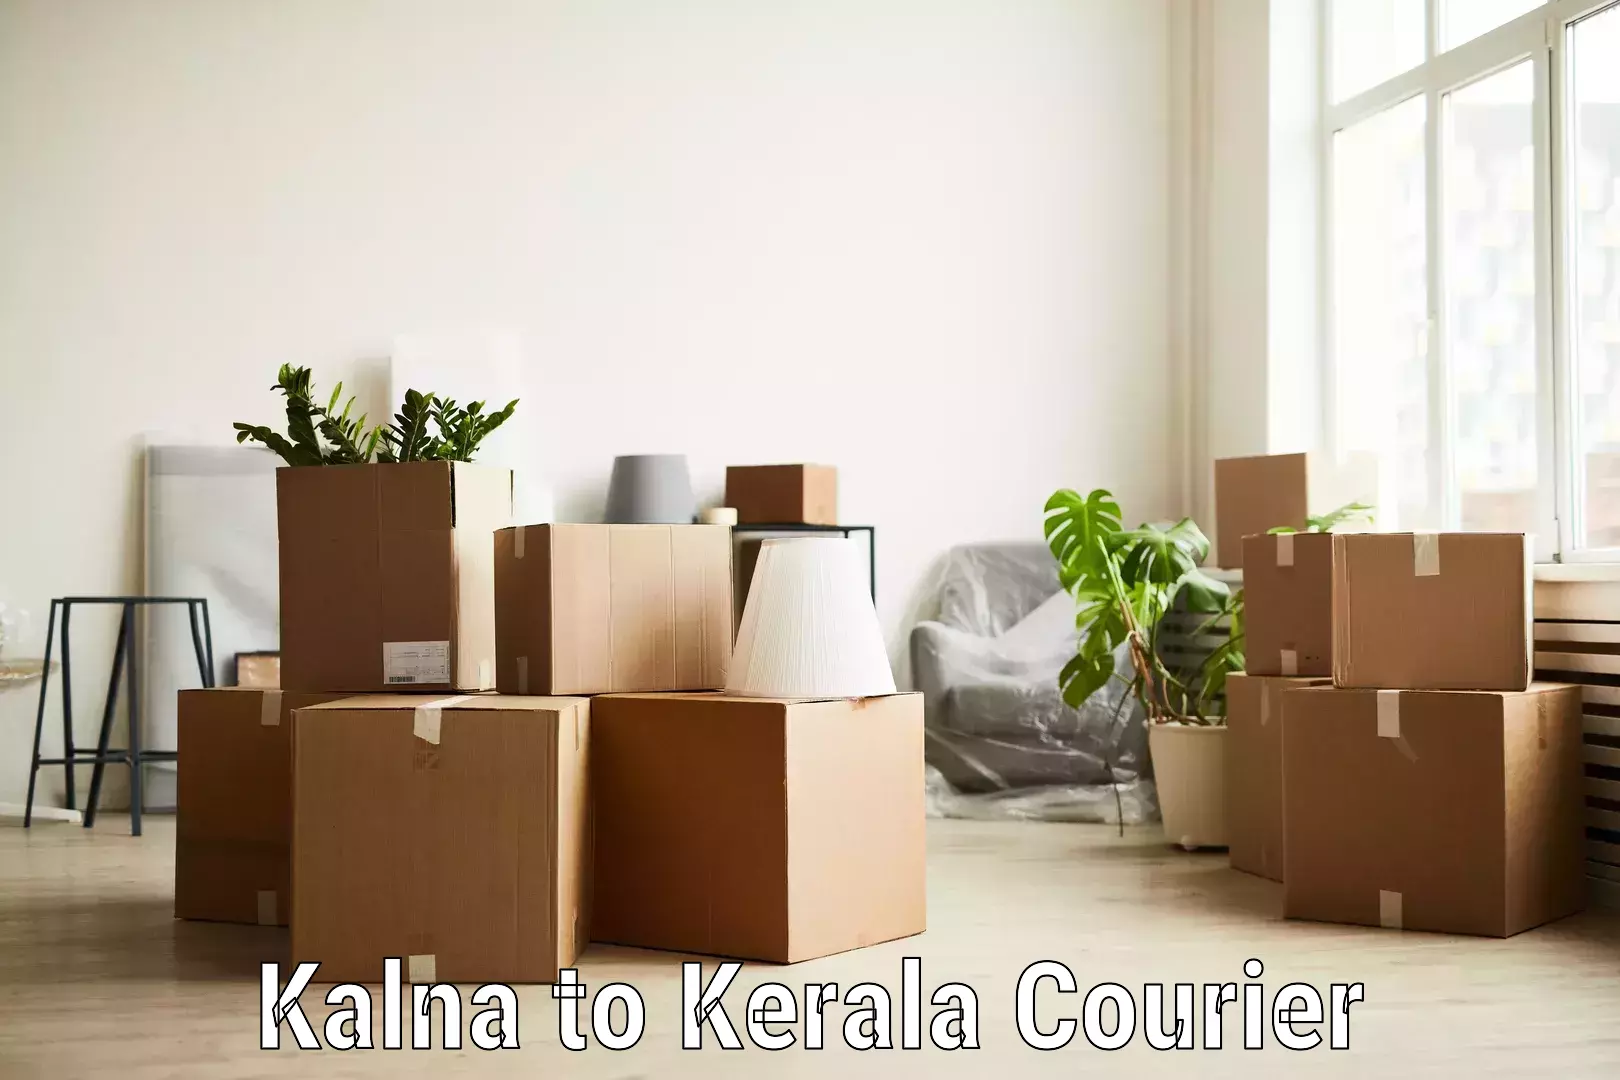 Discounted shipping Kalna to Kuchi